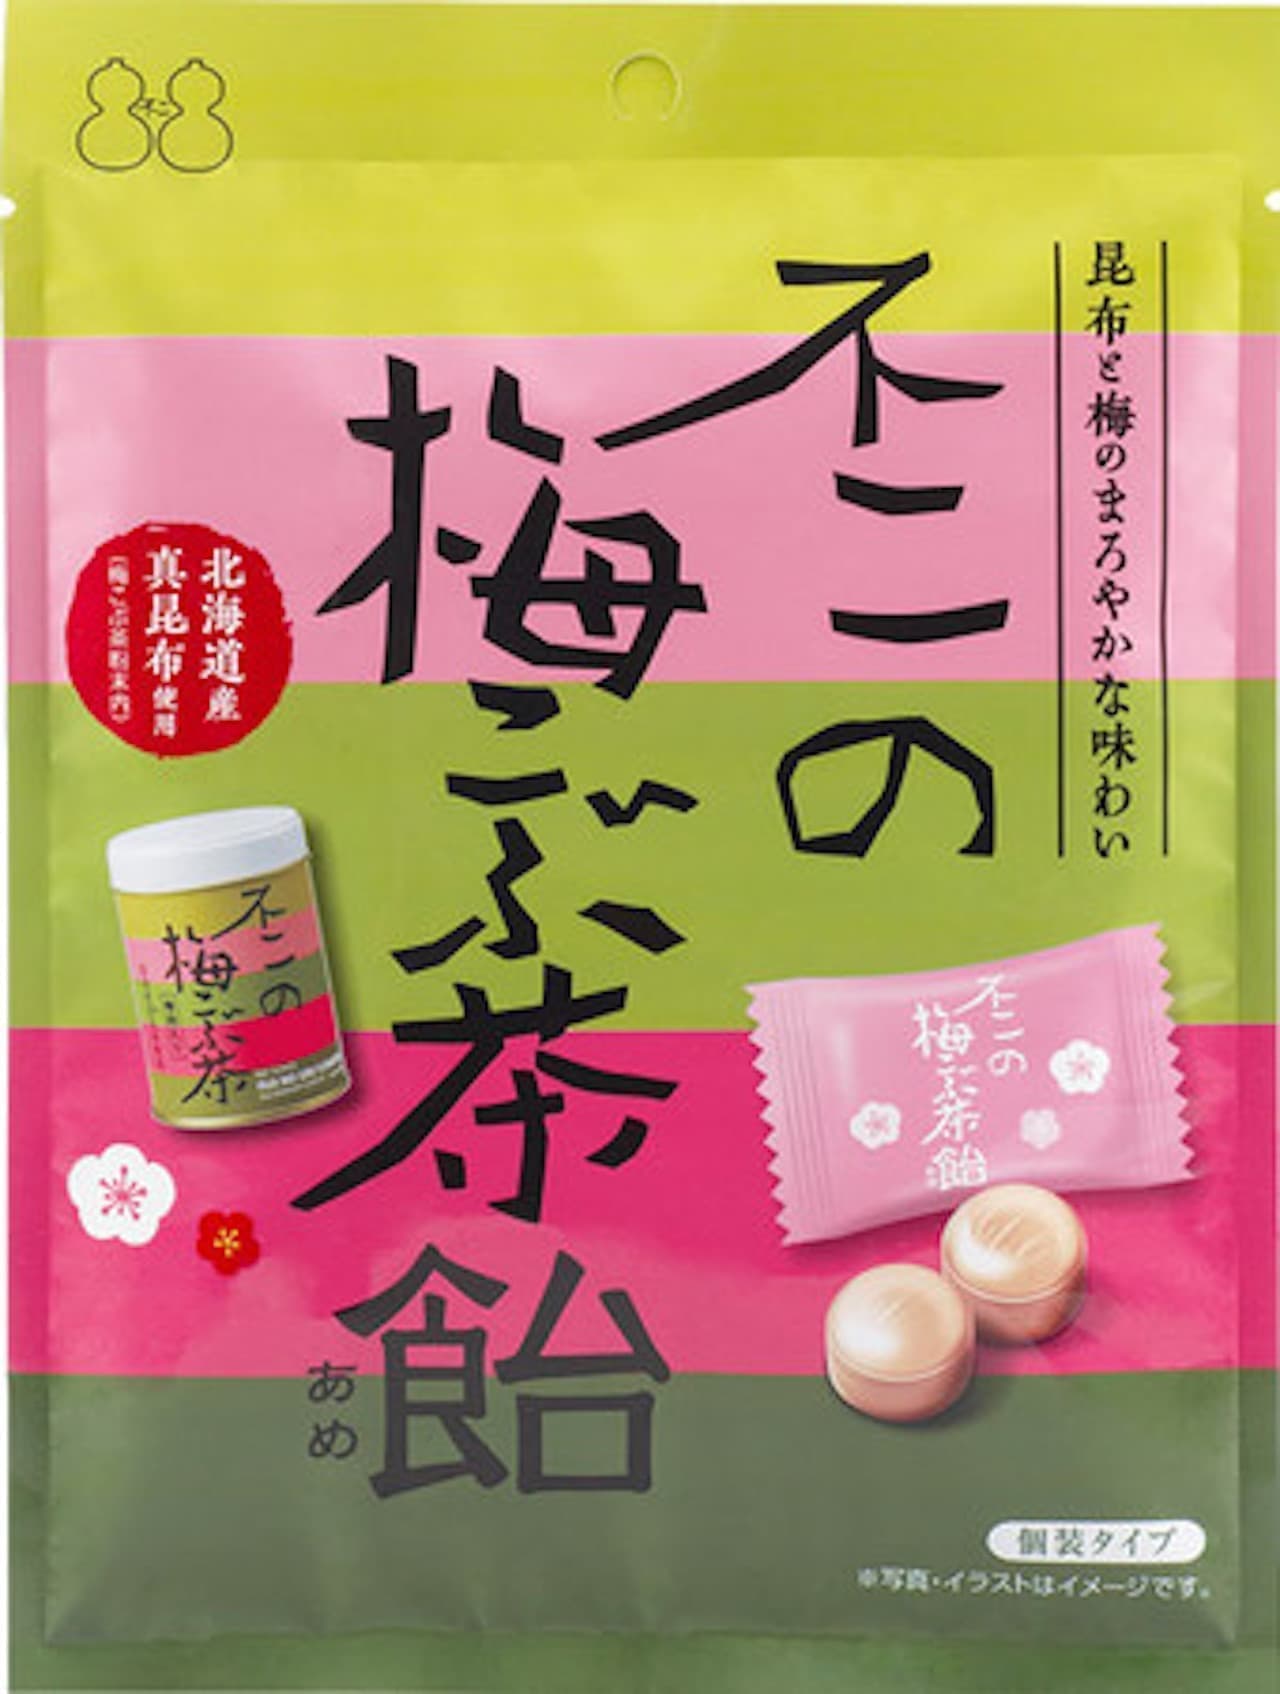 Fuji Shokuhin "Fuji no Umekobu Tea Candy"